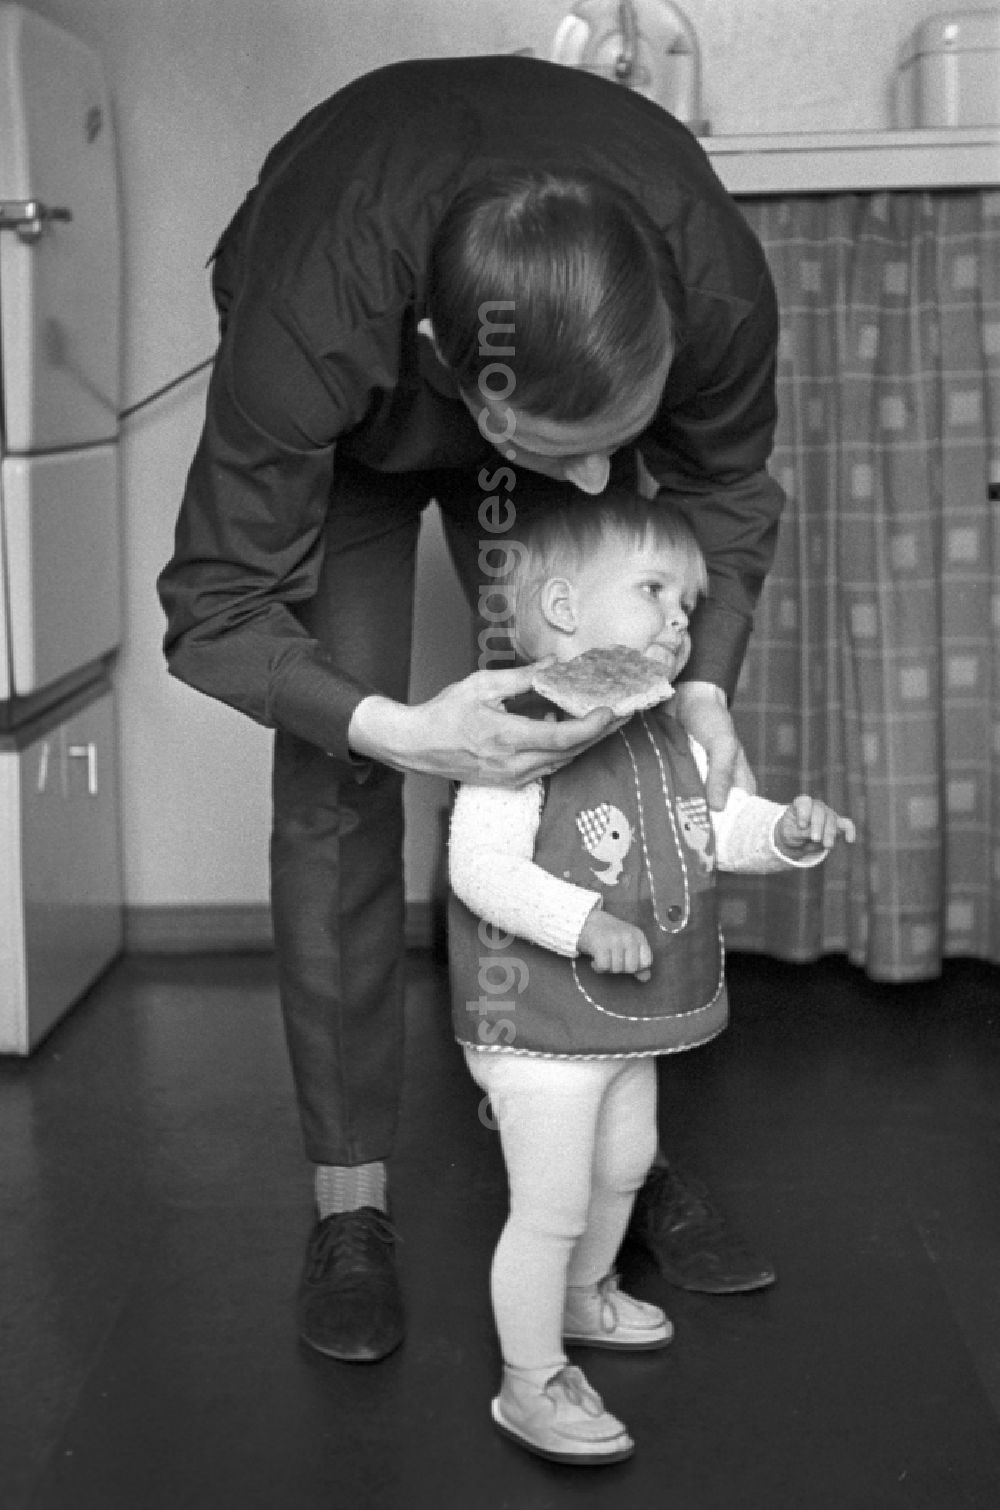 GDR image archive: Berlin - Friedrichshain - Dad feeding his child in Berlin - Friedrichshain